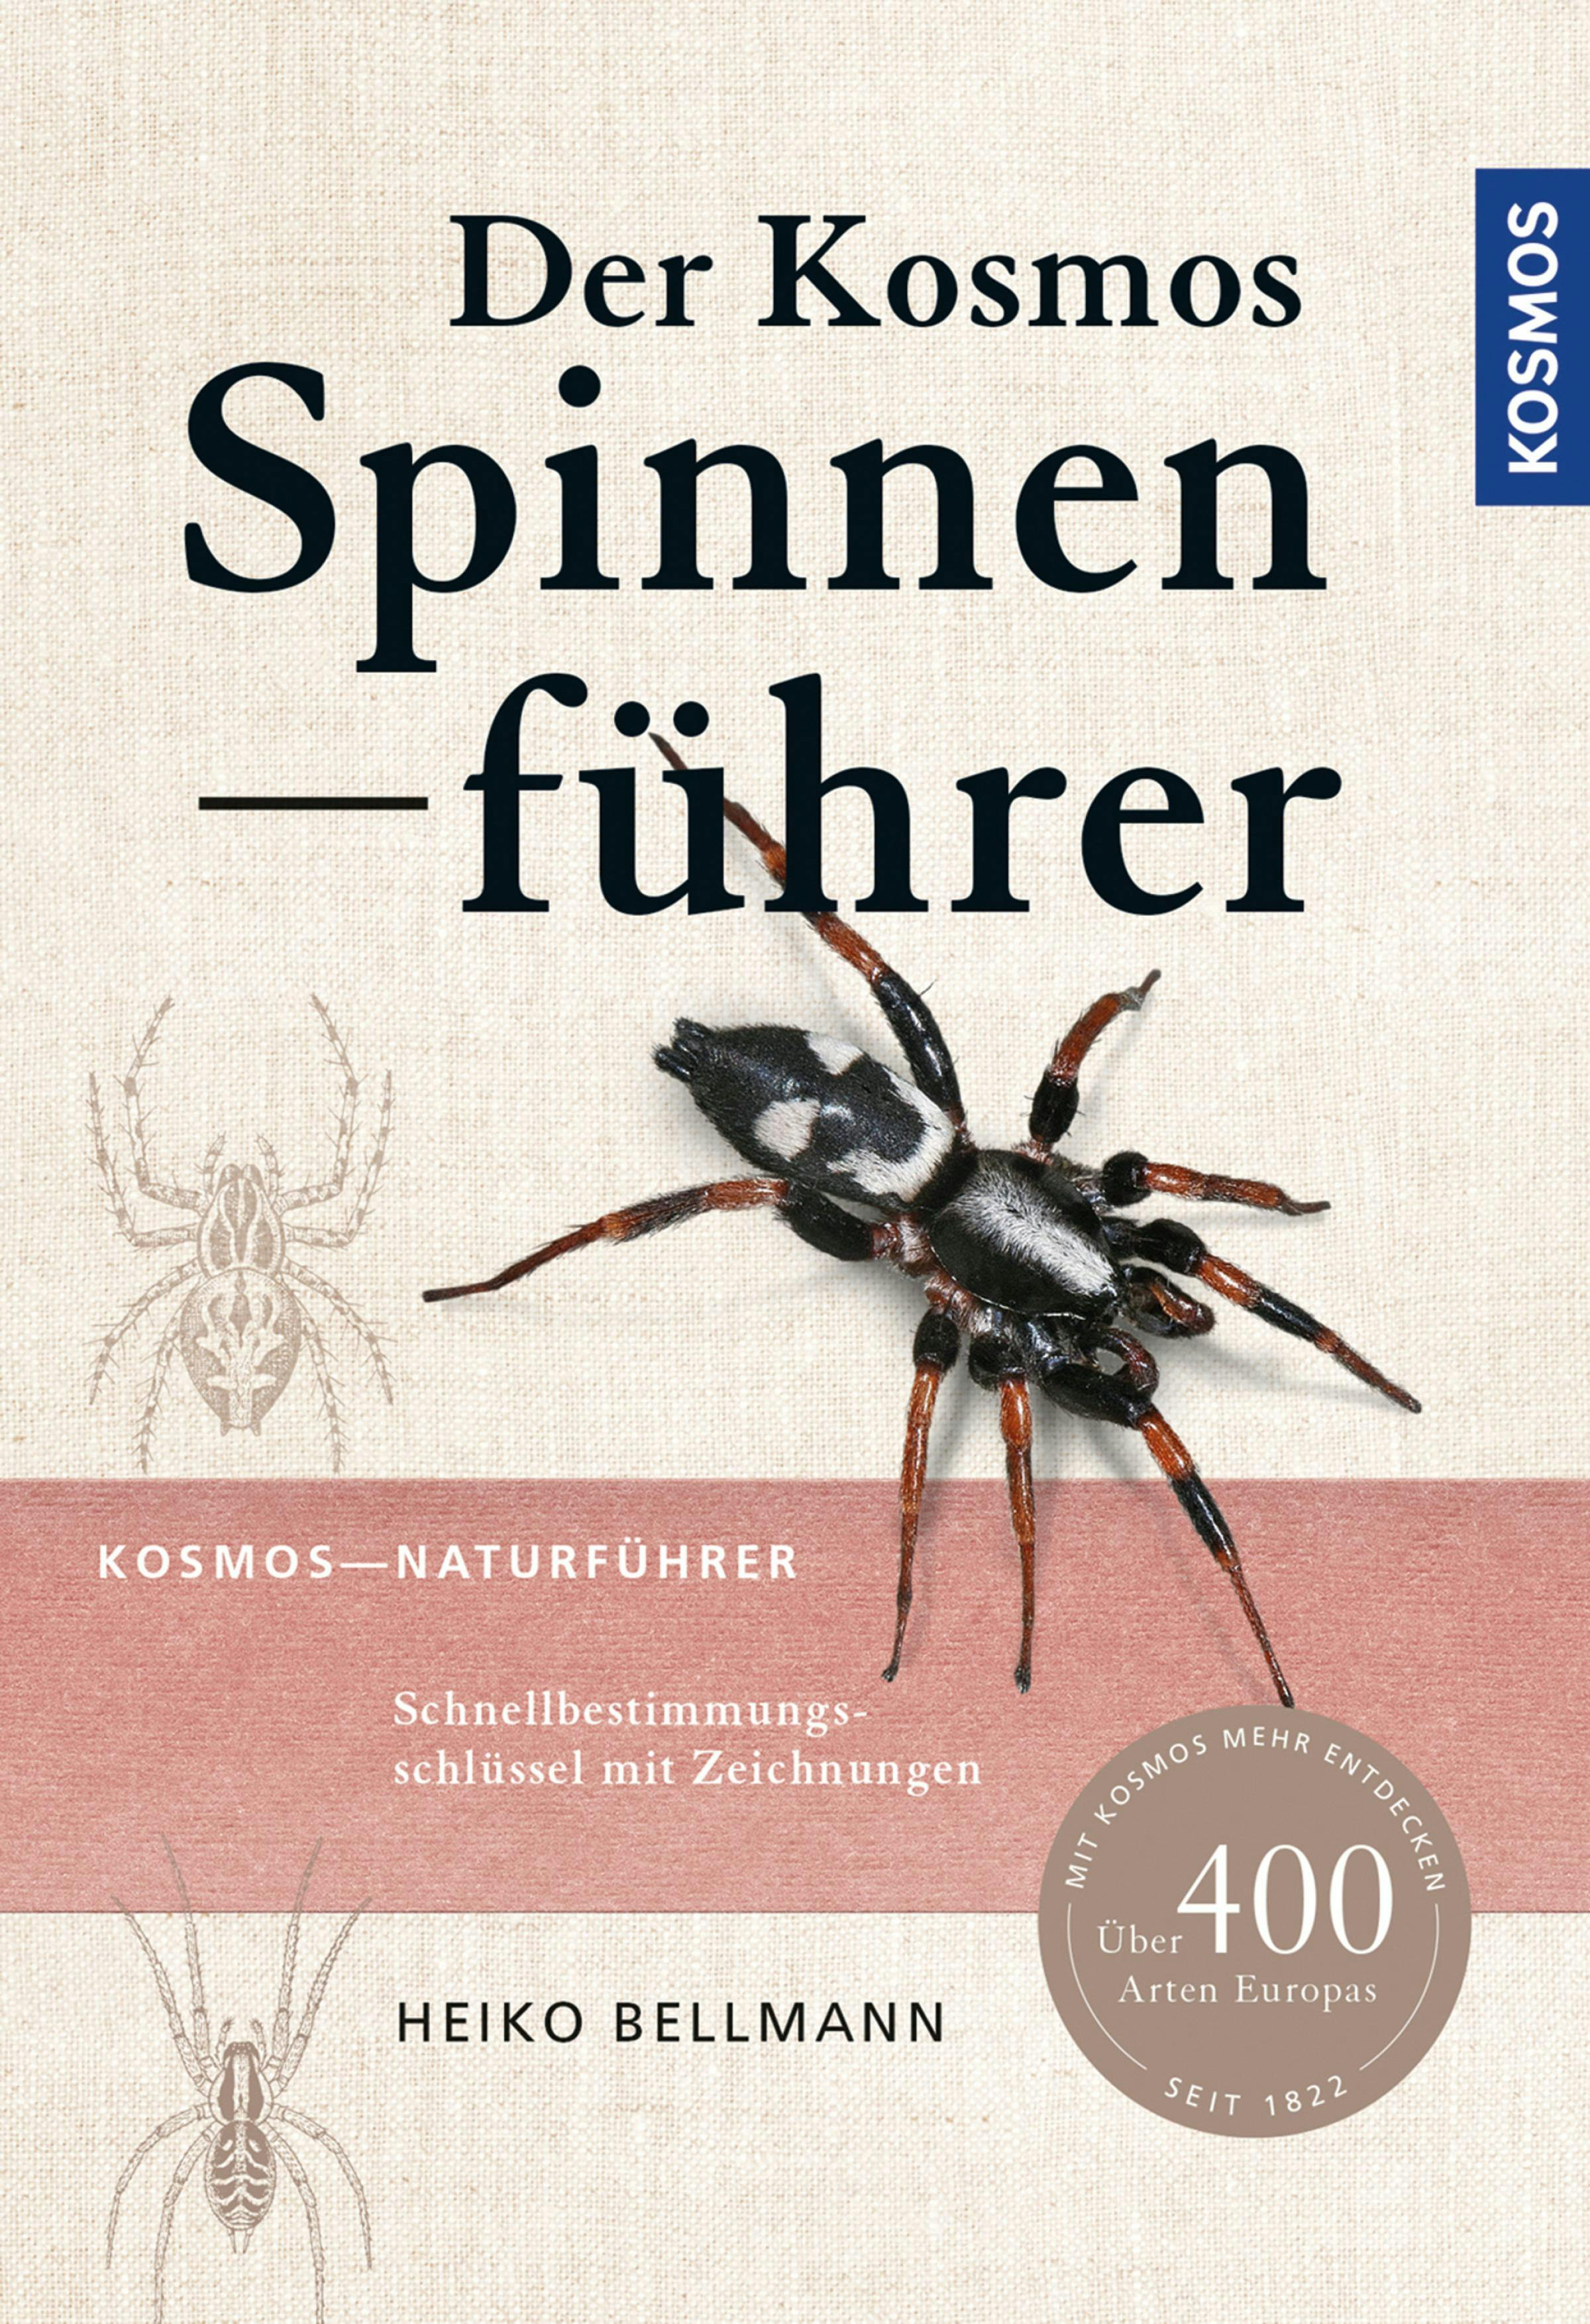 Der Kosmos Spinnenführer - Heiko Bellmann